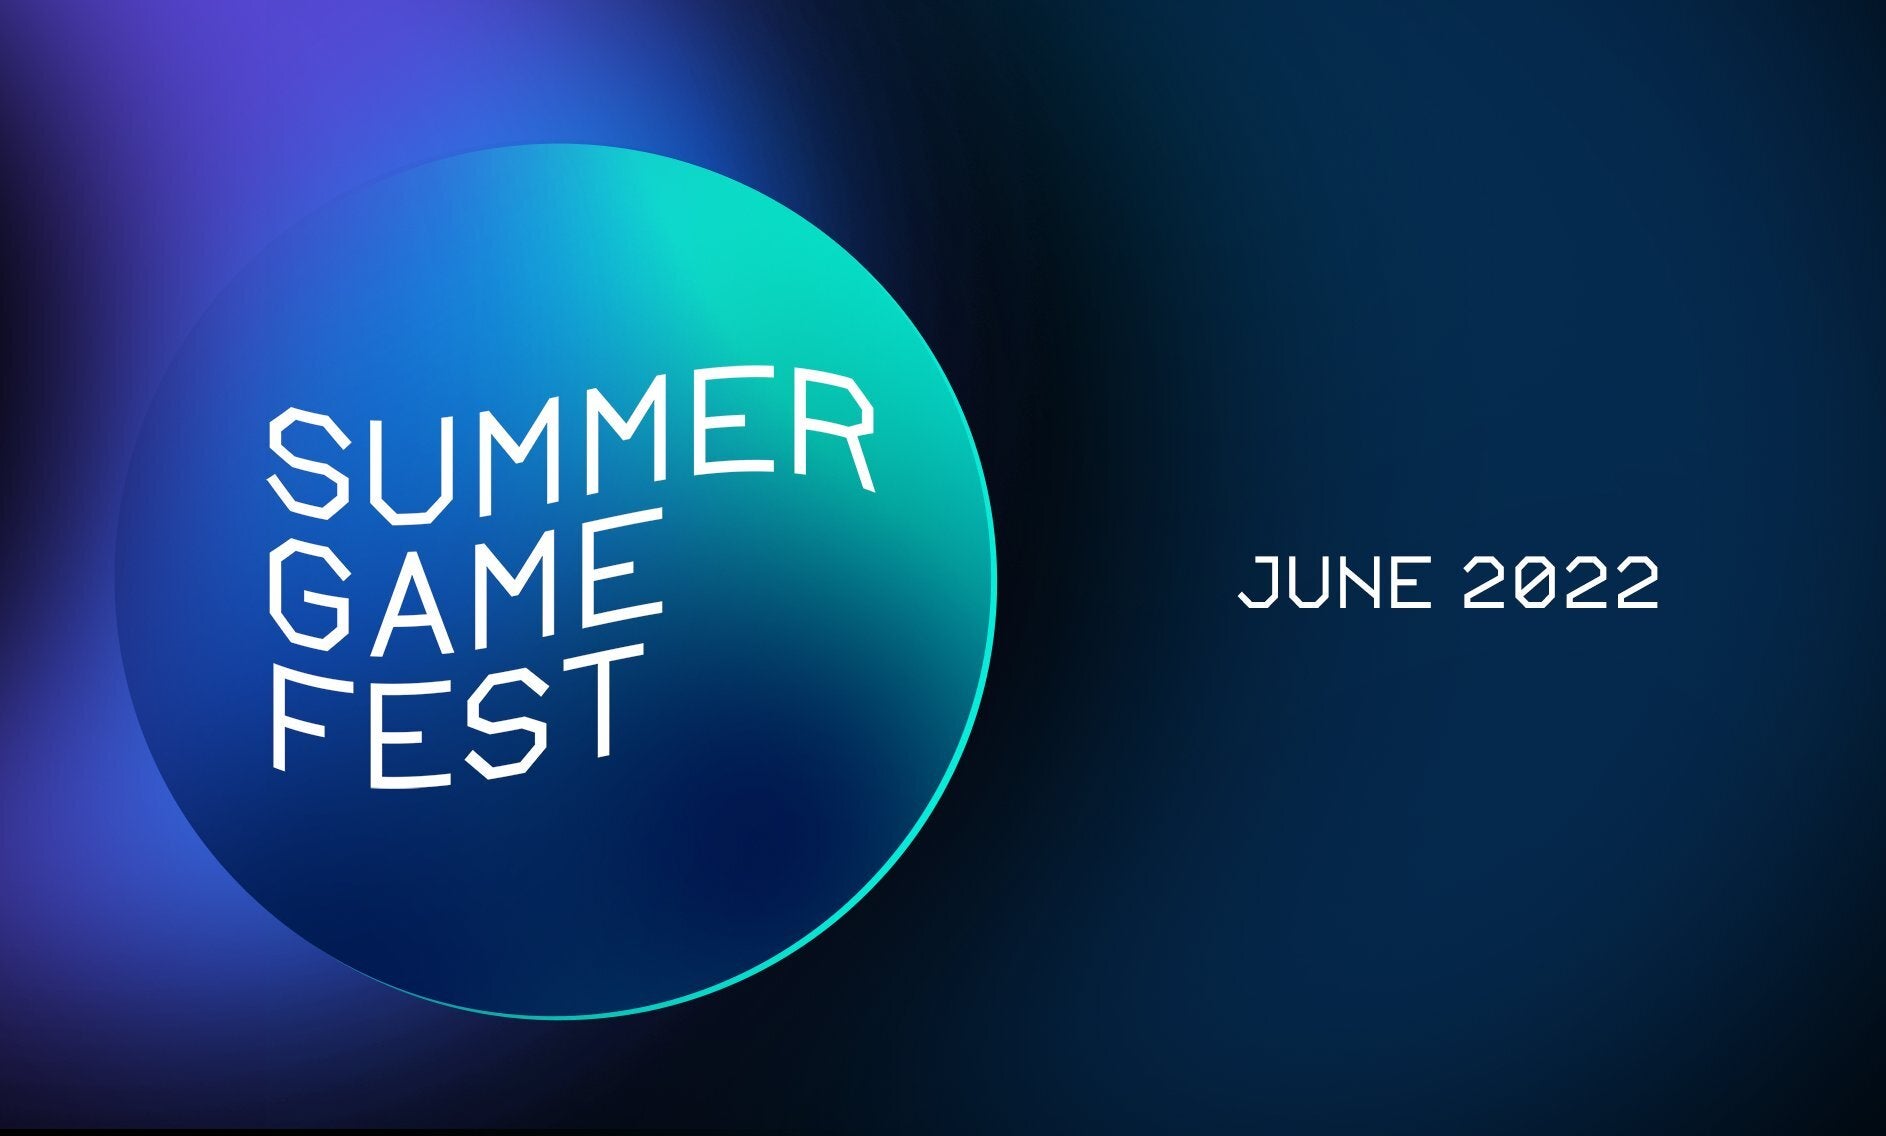 Imagem para Summer Game Fest 2022 anunciado para junho